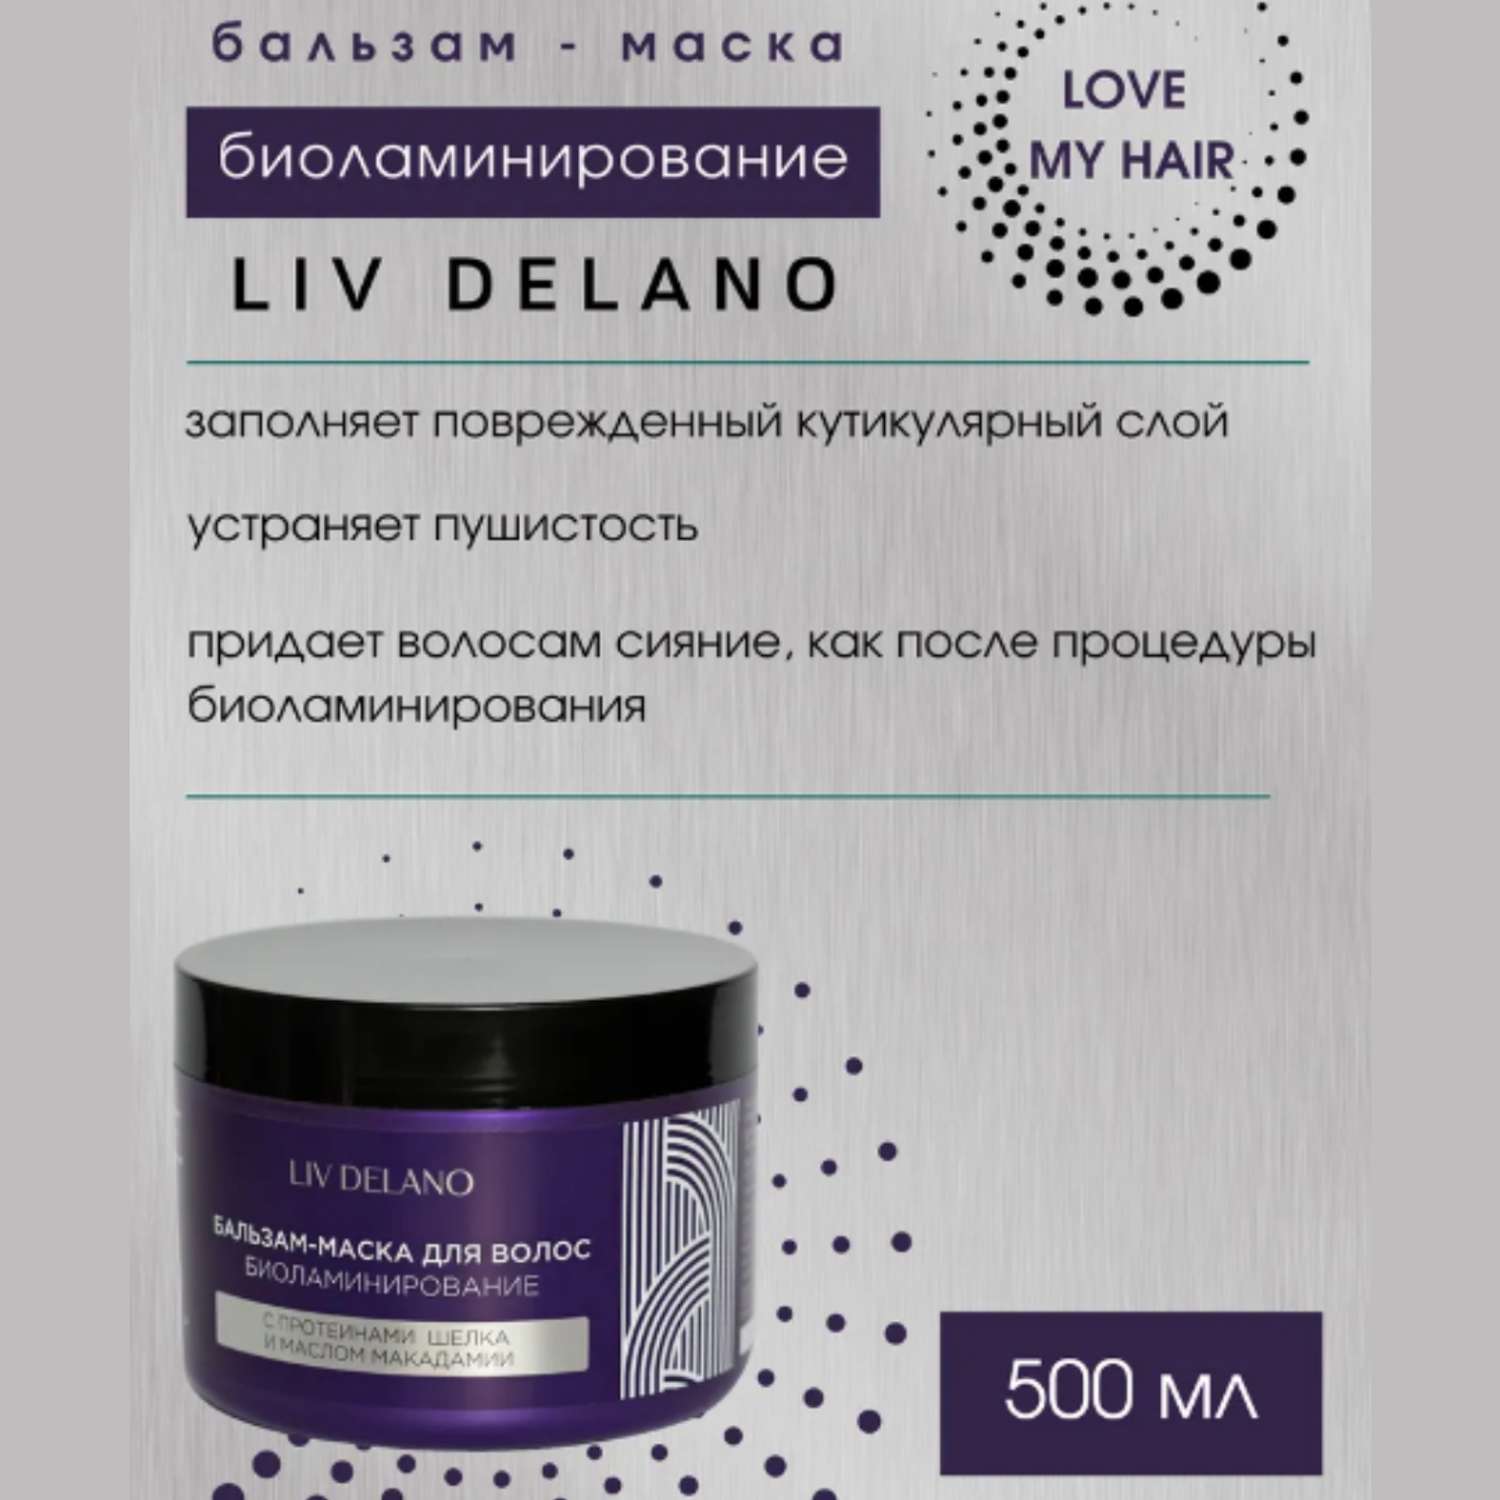 Бальзам для волос LIV DELANO биоламинирование с протеинами шёлка и маслом макадами 500 мл - фото 2